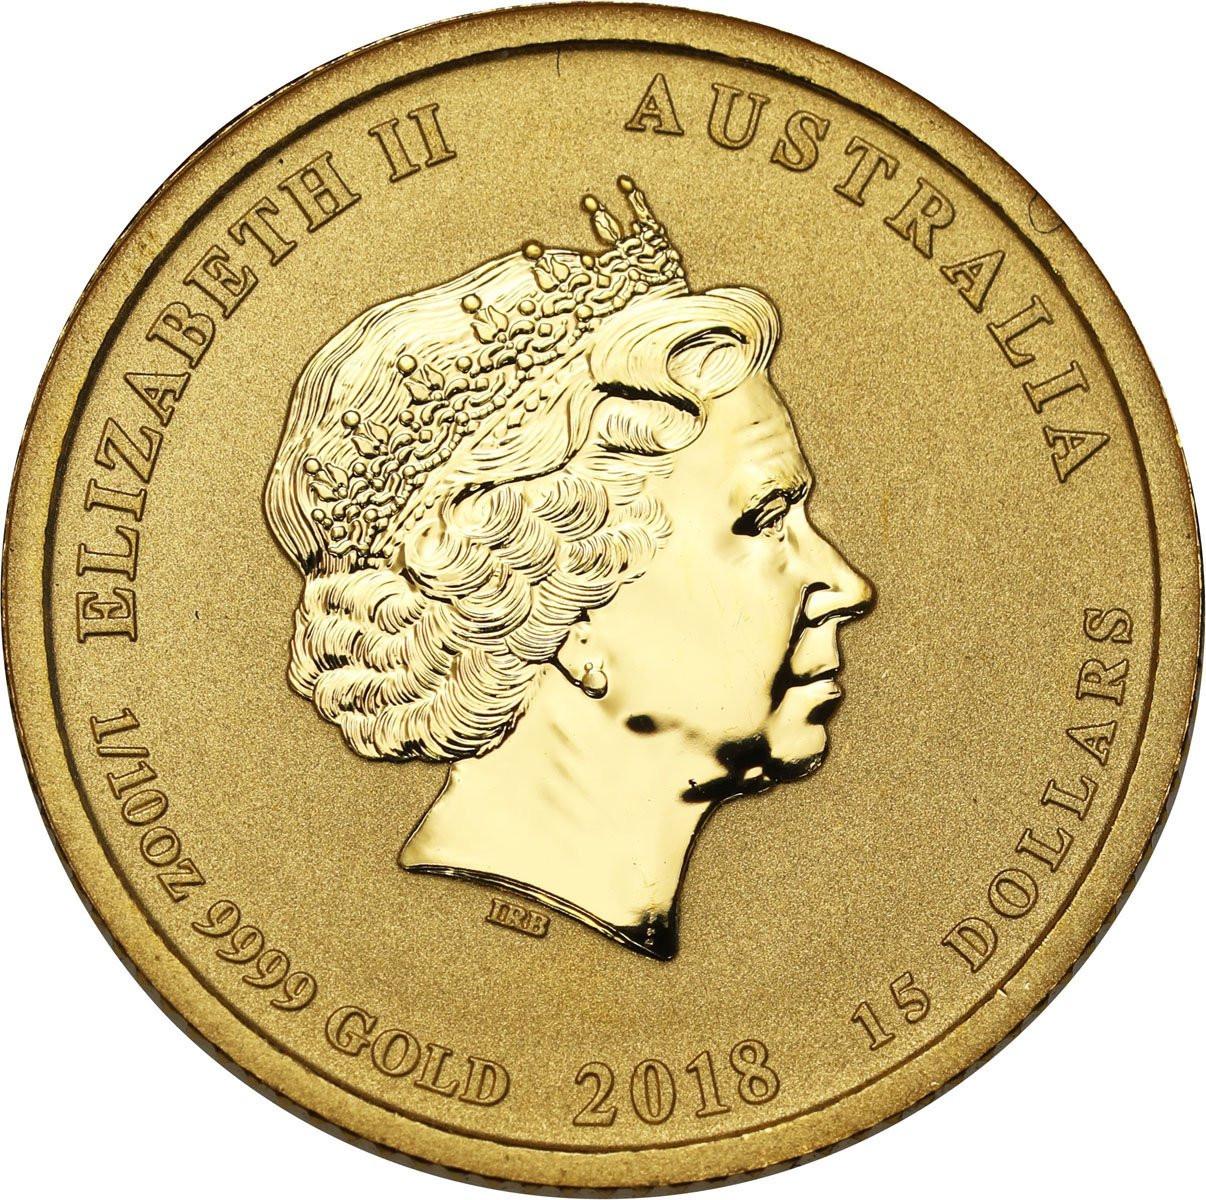 Australia. 15 dolarów 2018 rok PSA - 1/10 uncji złota